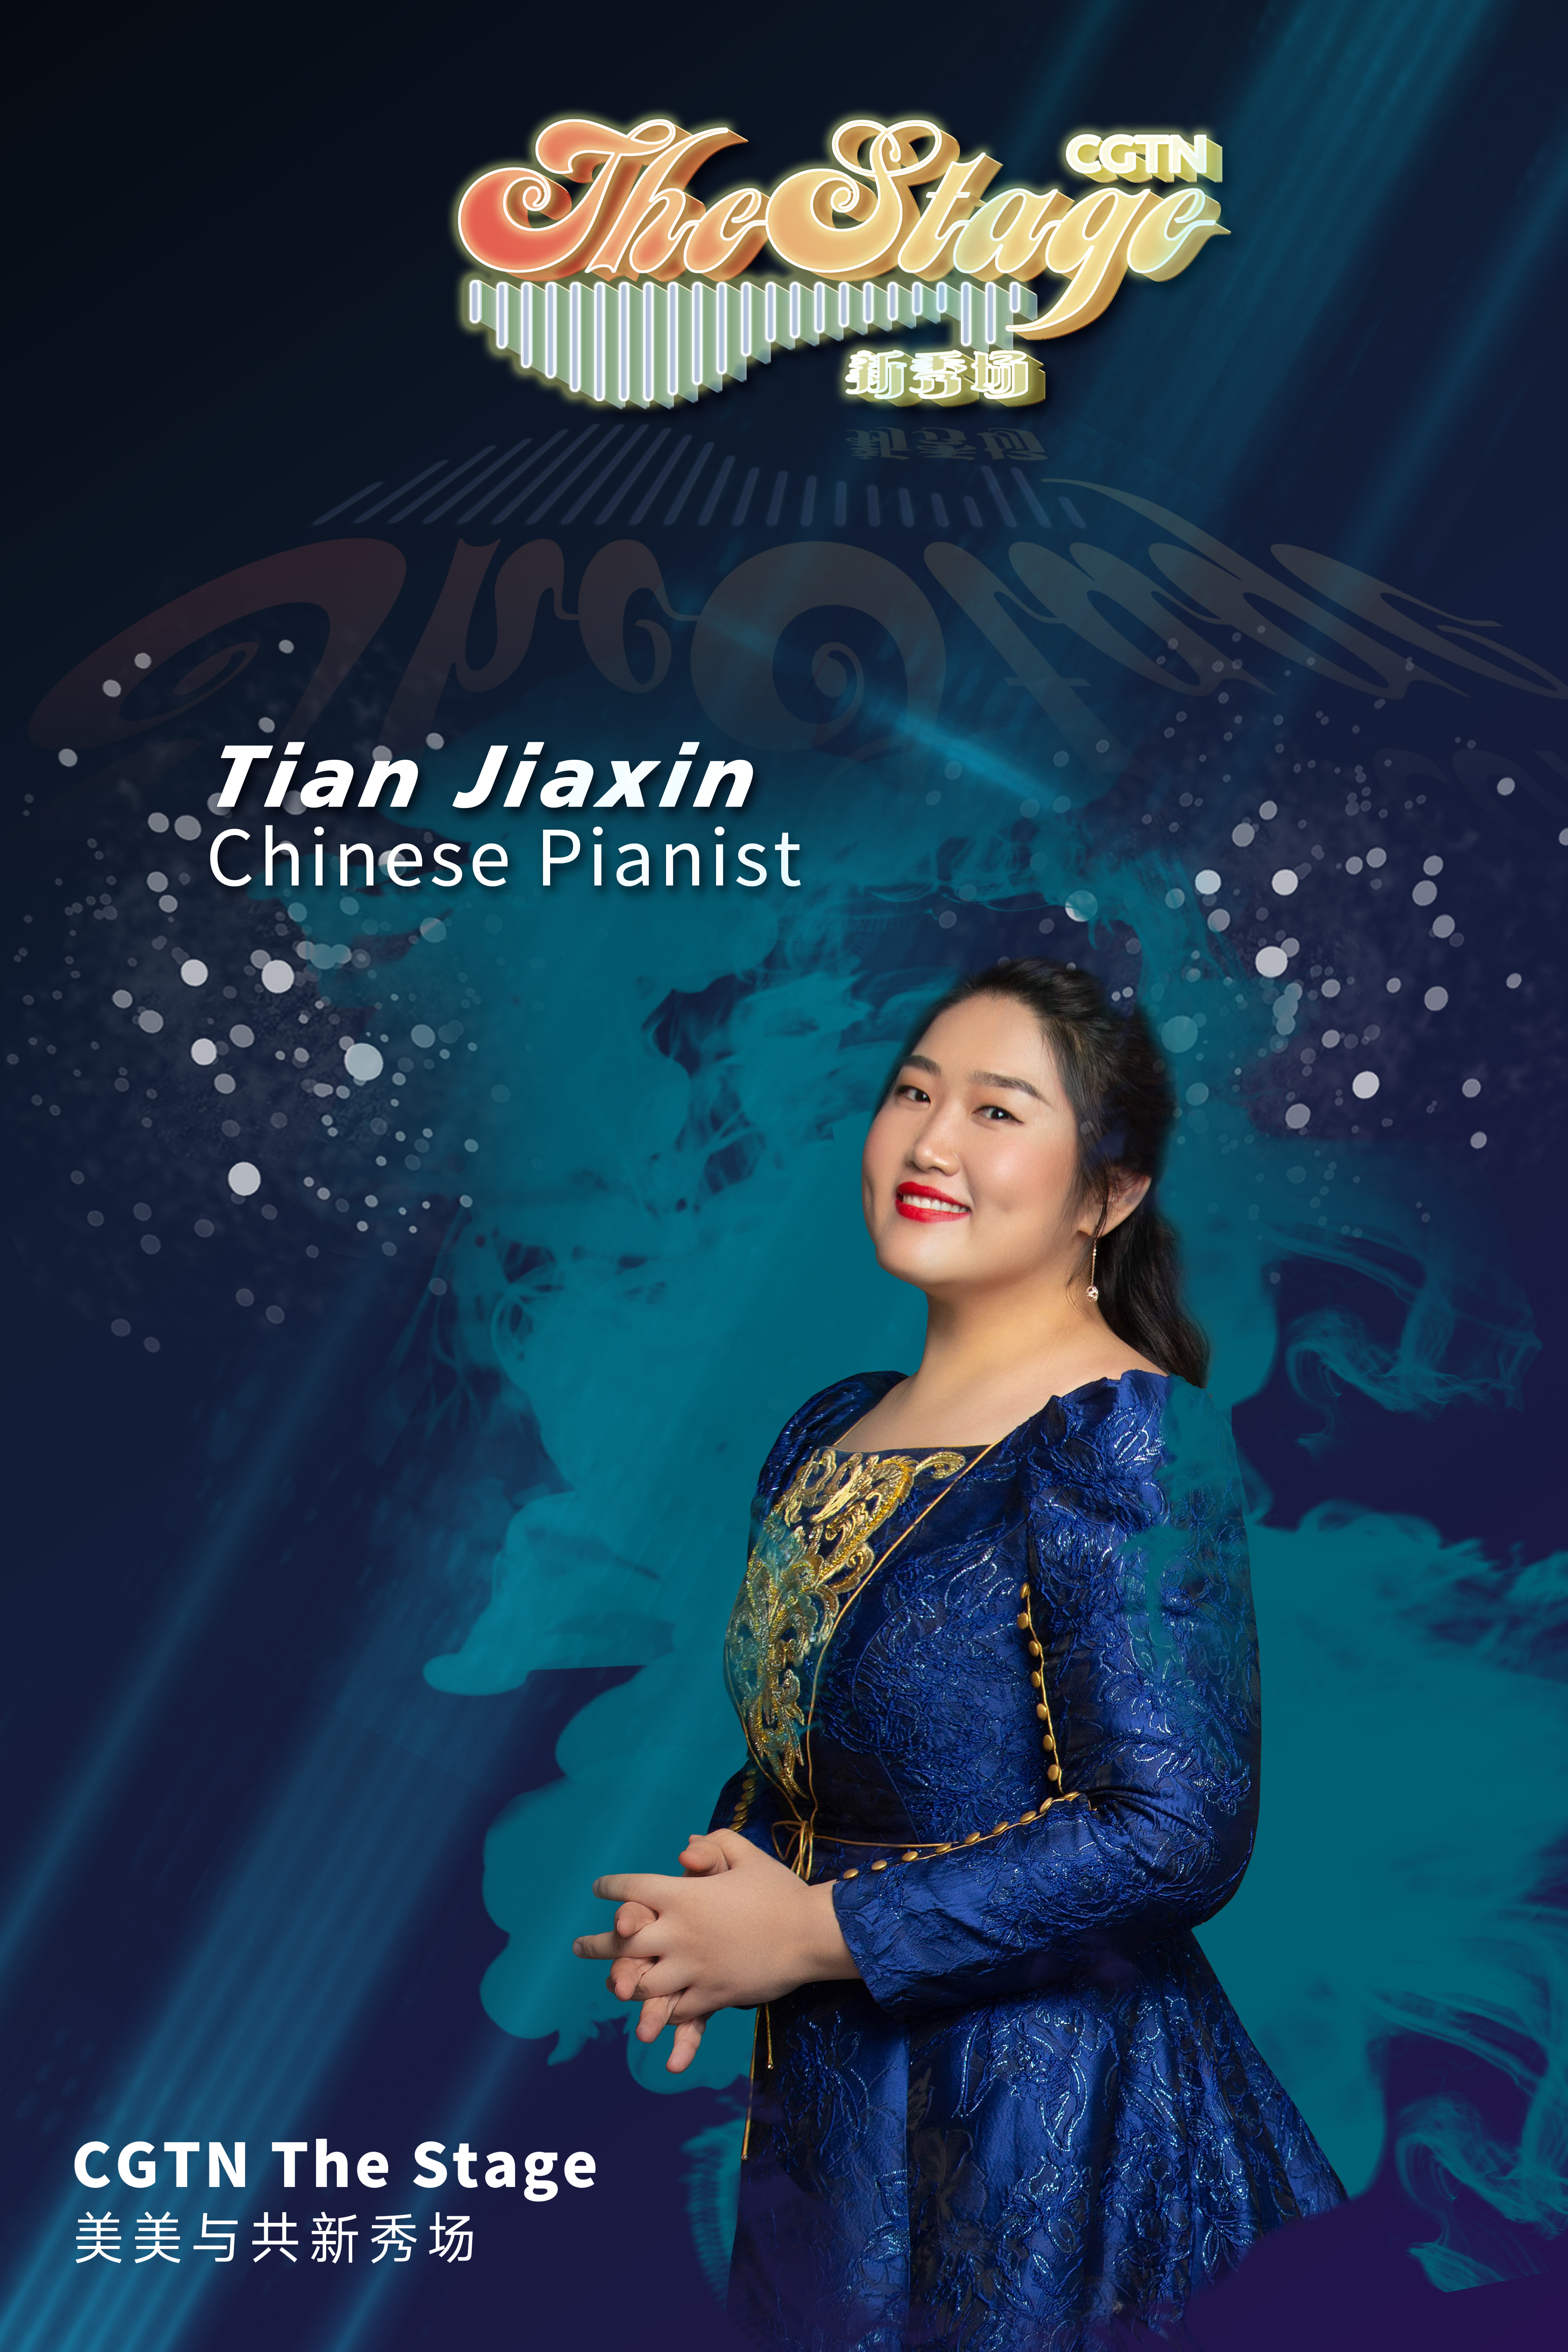 Pianist Tian Jiaxin